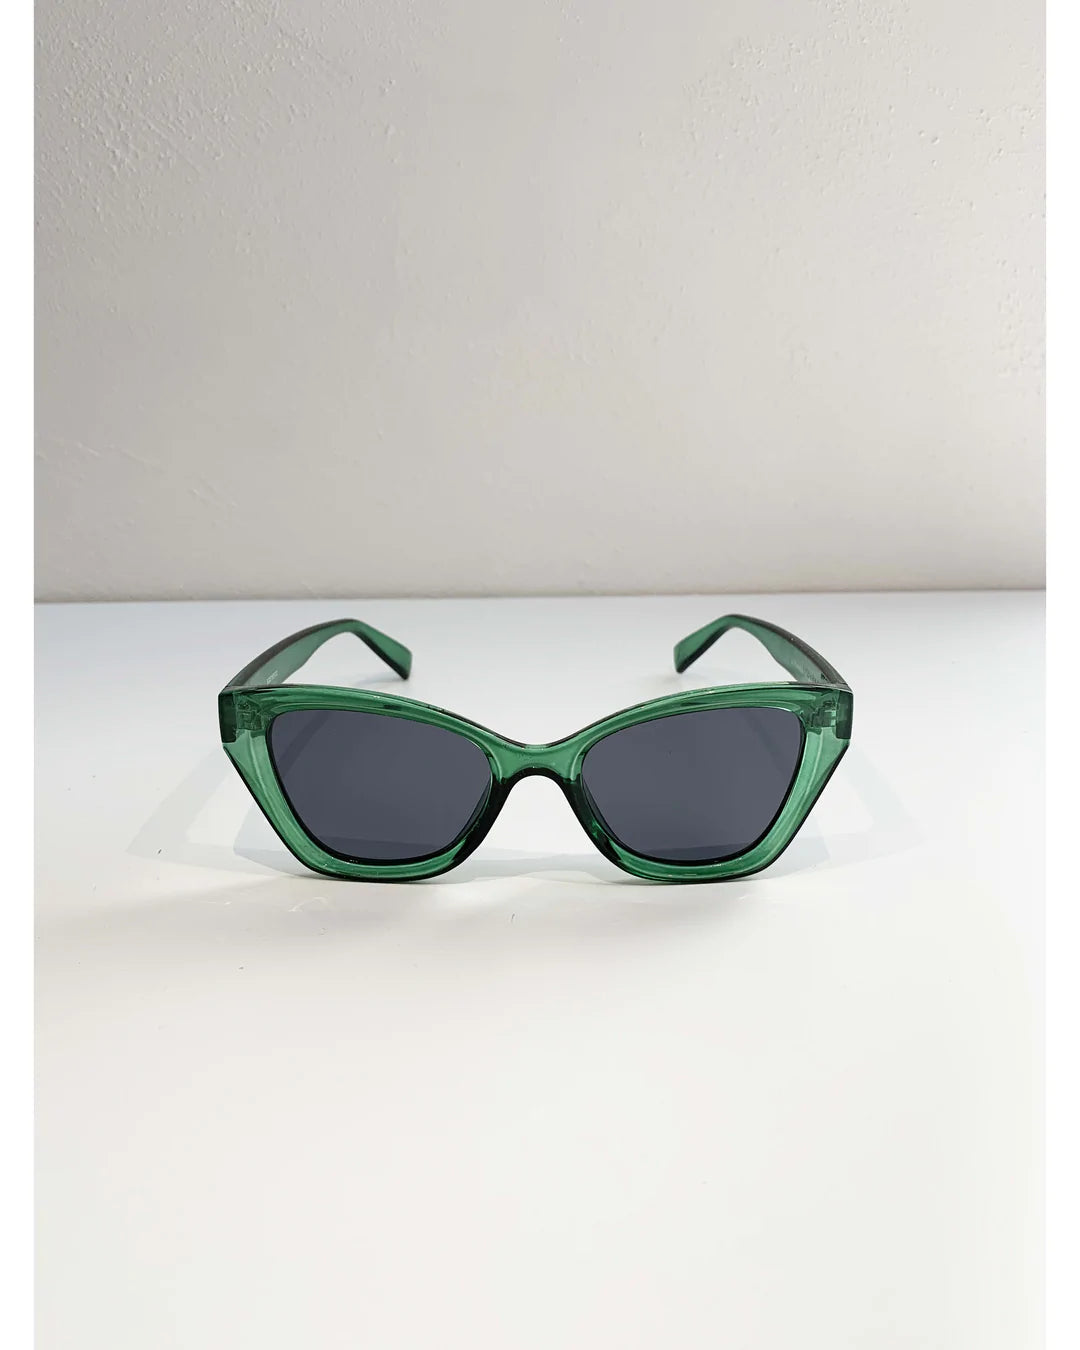 Miami Trans Green Sunglasses - STELLA + GEMMA Accessories LUMA NZ